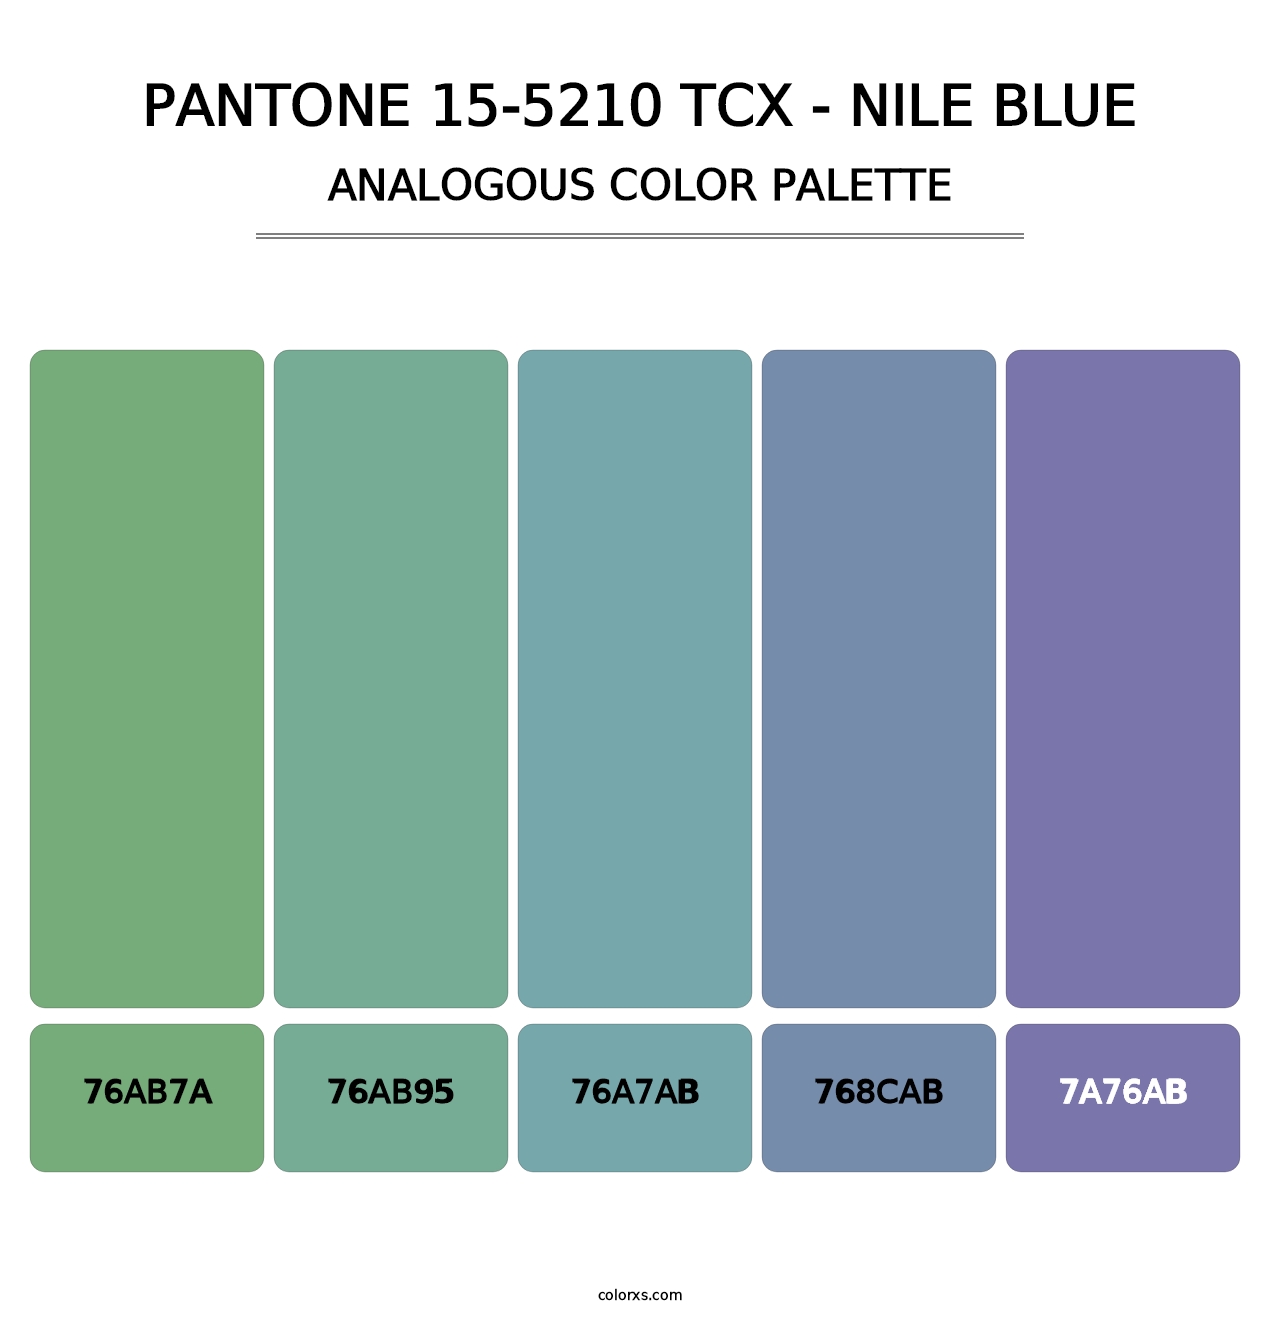 PANTONE 15-5210 TCX - Nile Blue - Analogous Color Palette